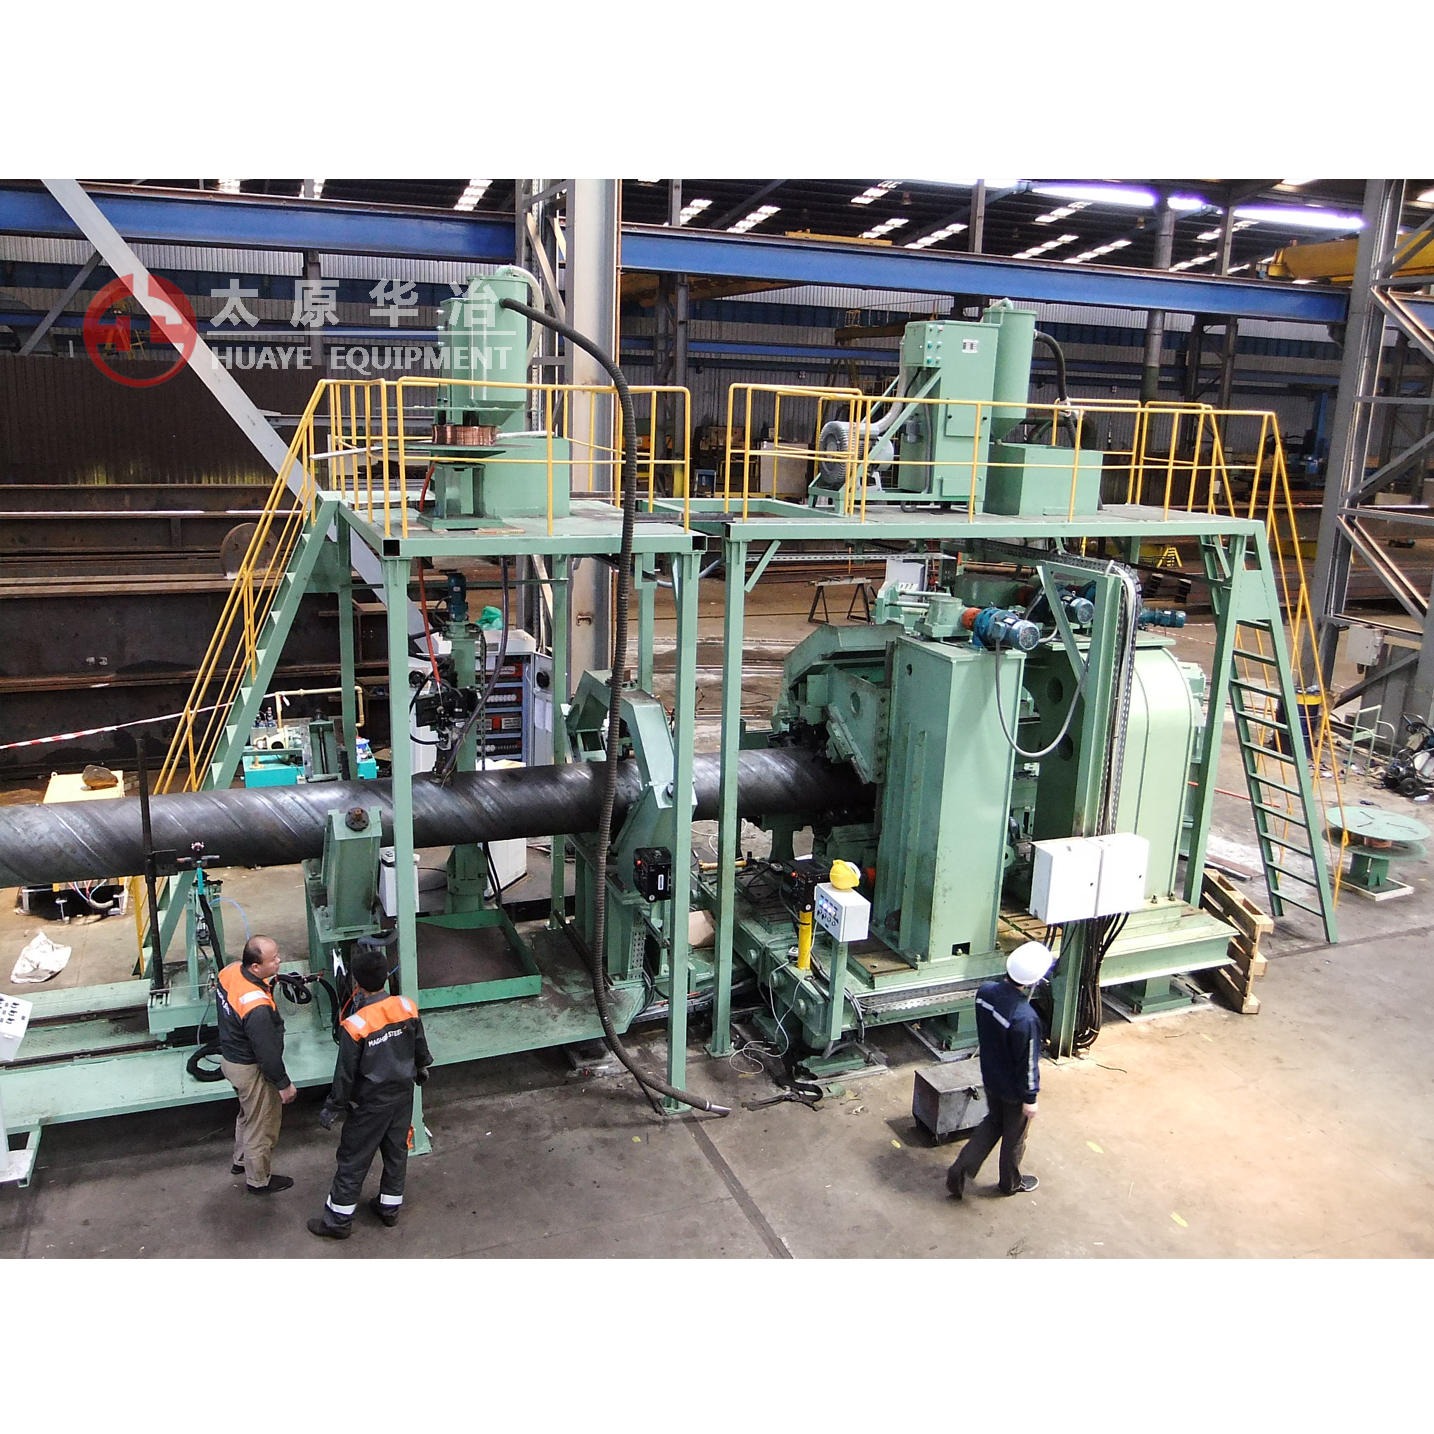 螺旋焊管机组设备 LH1550-1620-16 螺旋焊管生产线 专业生产设计